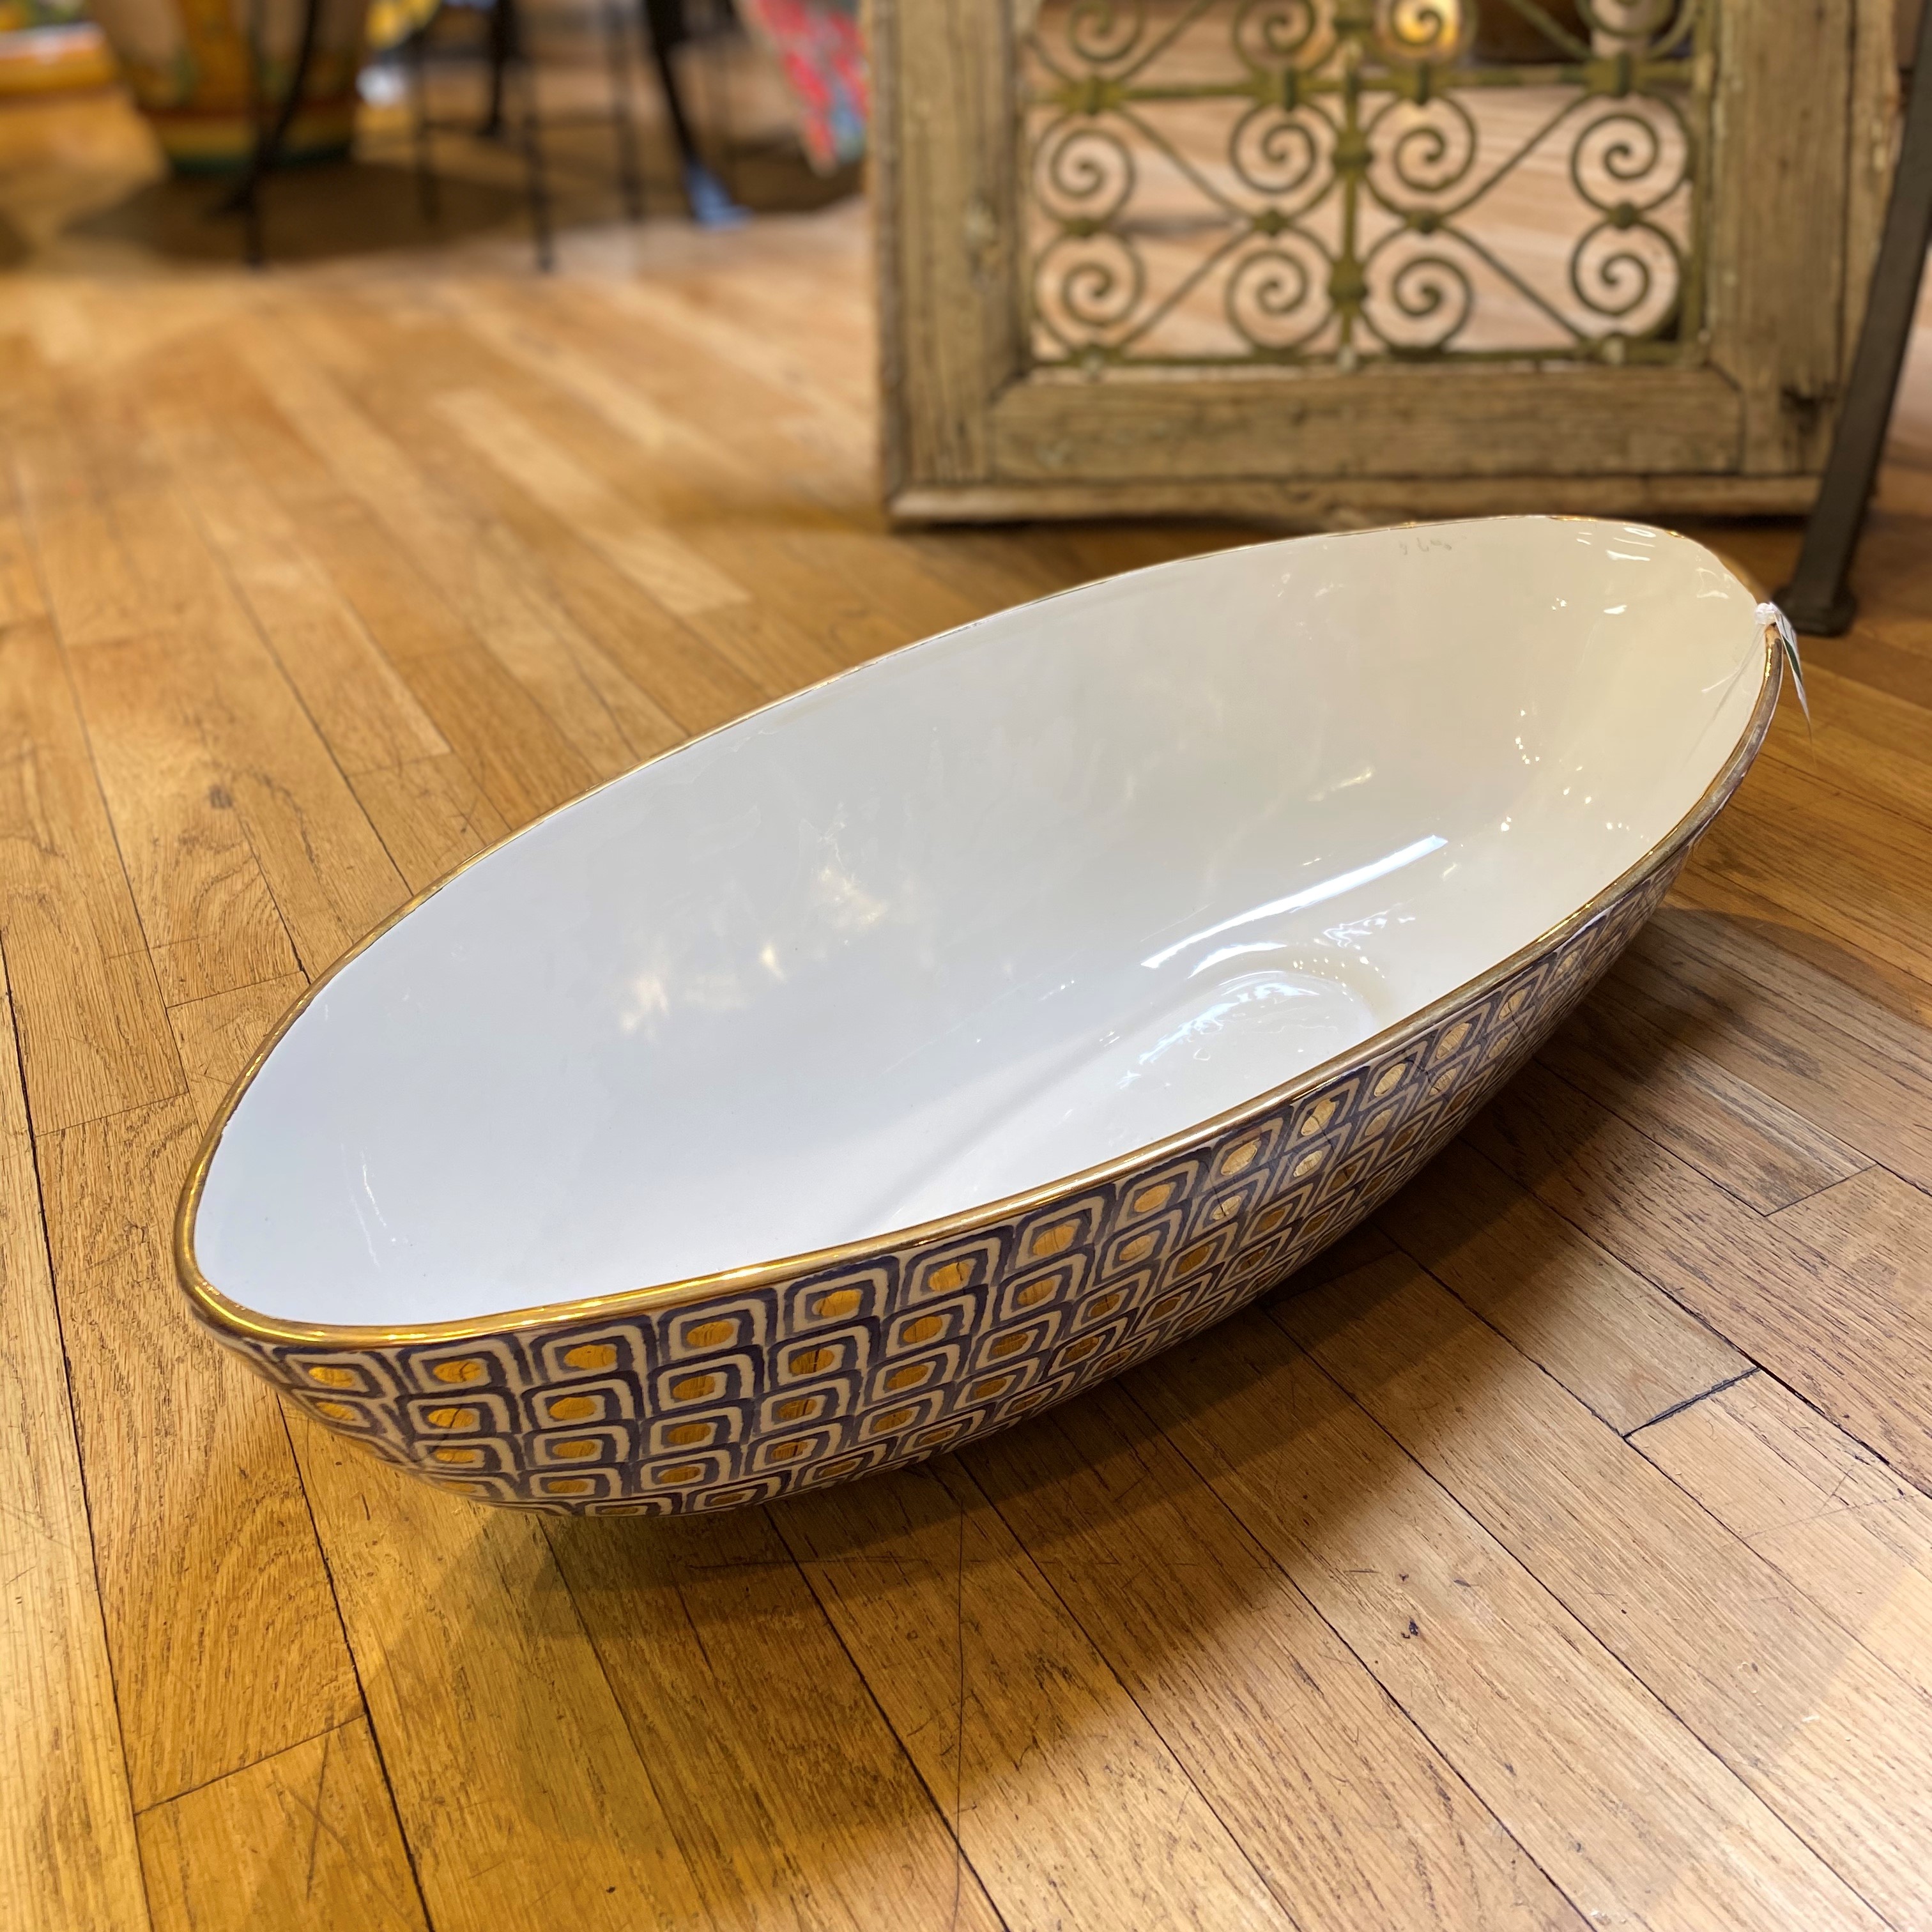 https://www.italianpottery.com/wp-content/uploads/2020/03/labirinto-long-oval-bowl-2.jpg